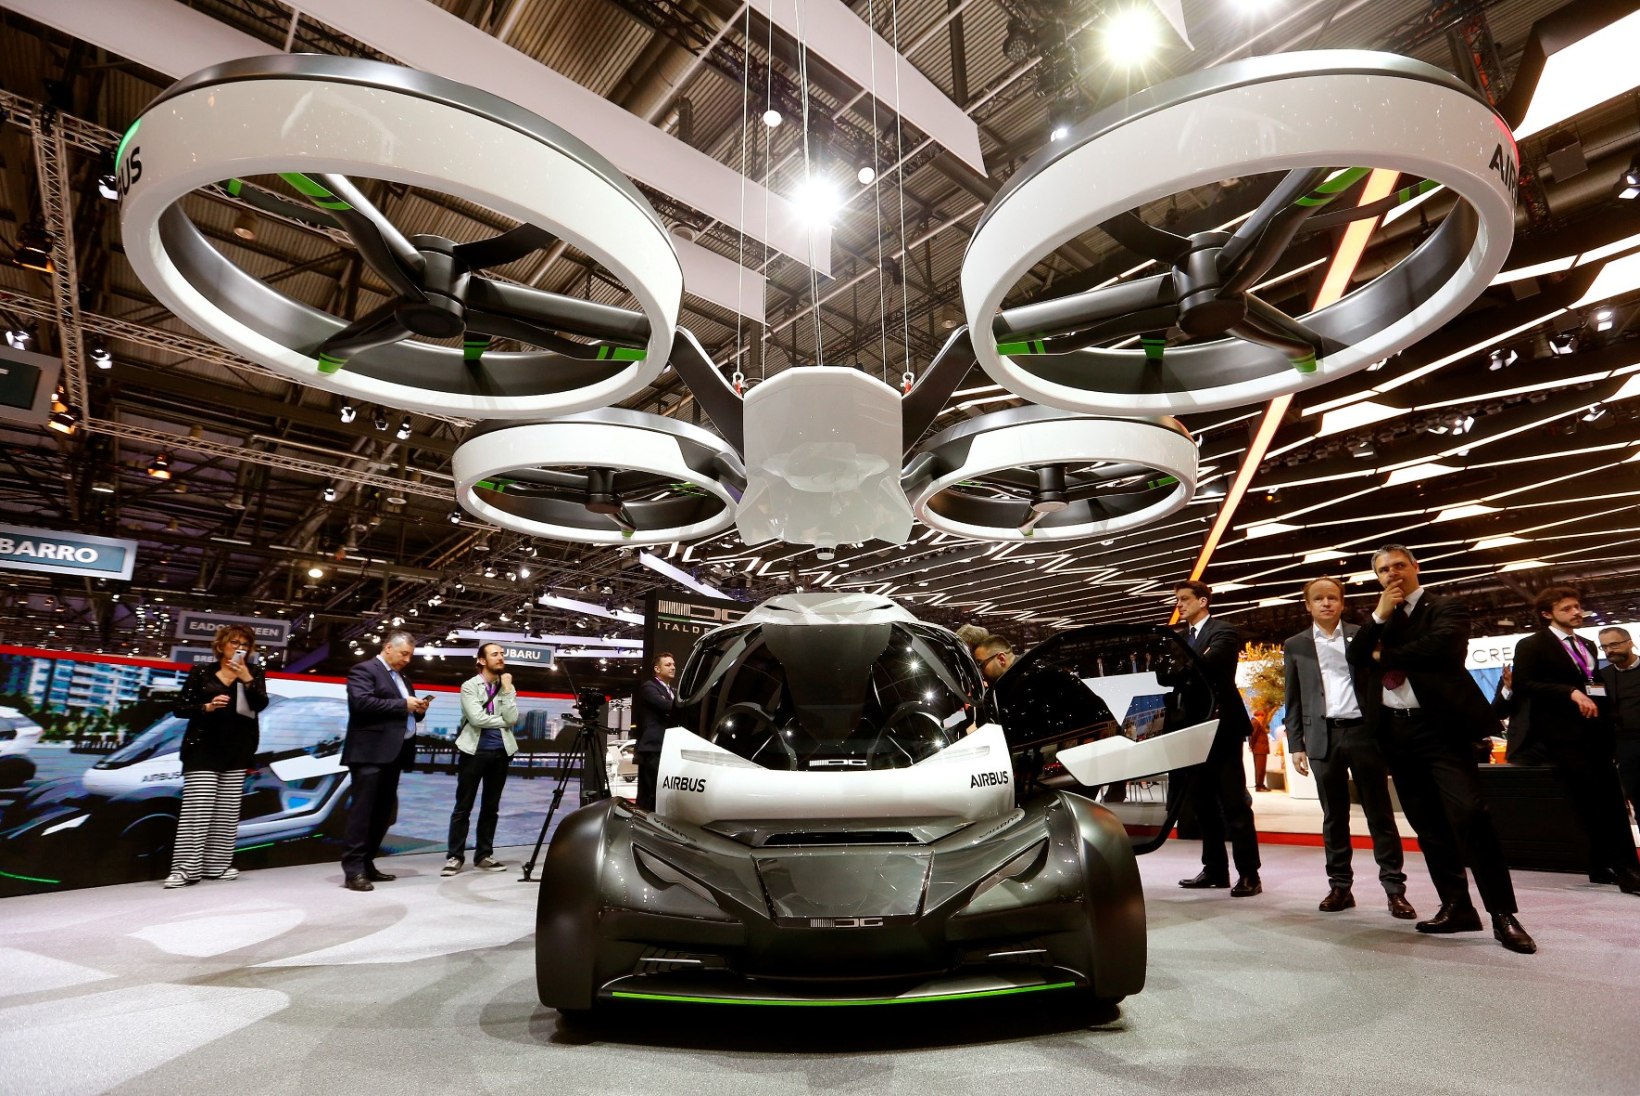 Auto ja drooni hübriid, mis võib ummikust lihtsalt üle lennata